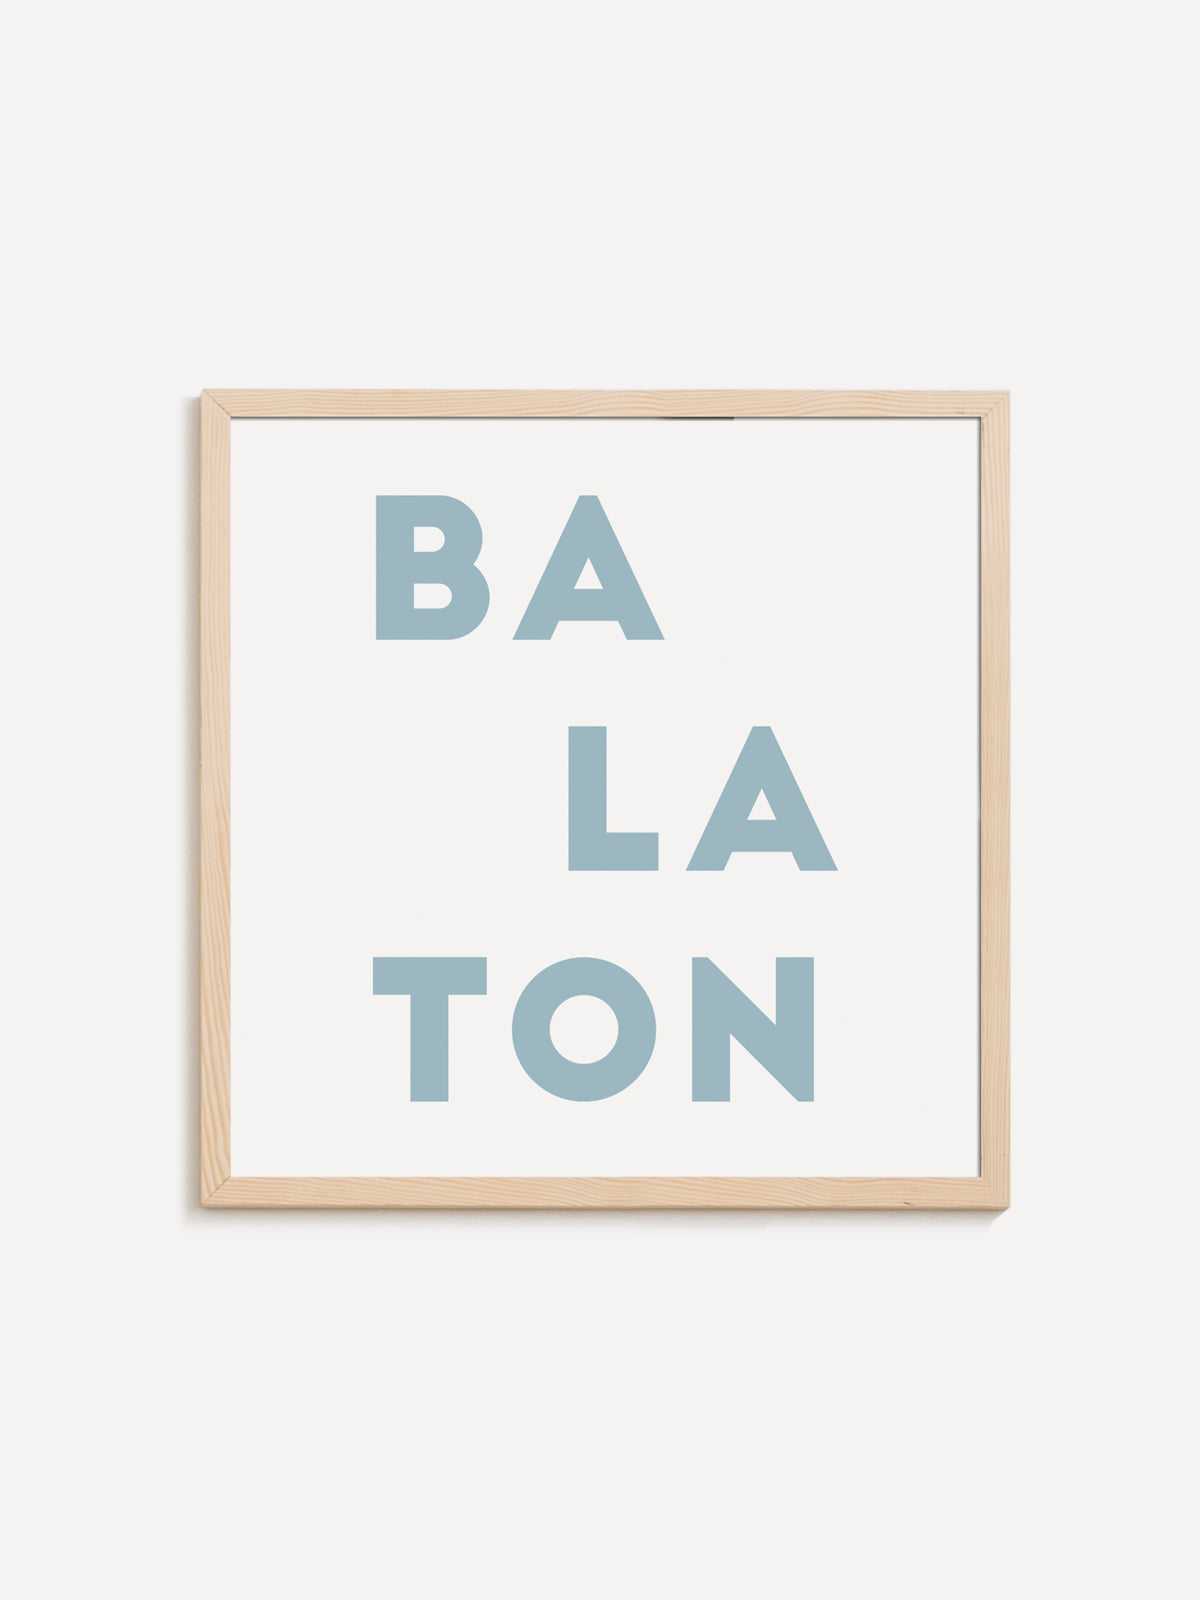 BALATON INSCRIPTION graphics - Zita Majoros